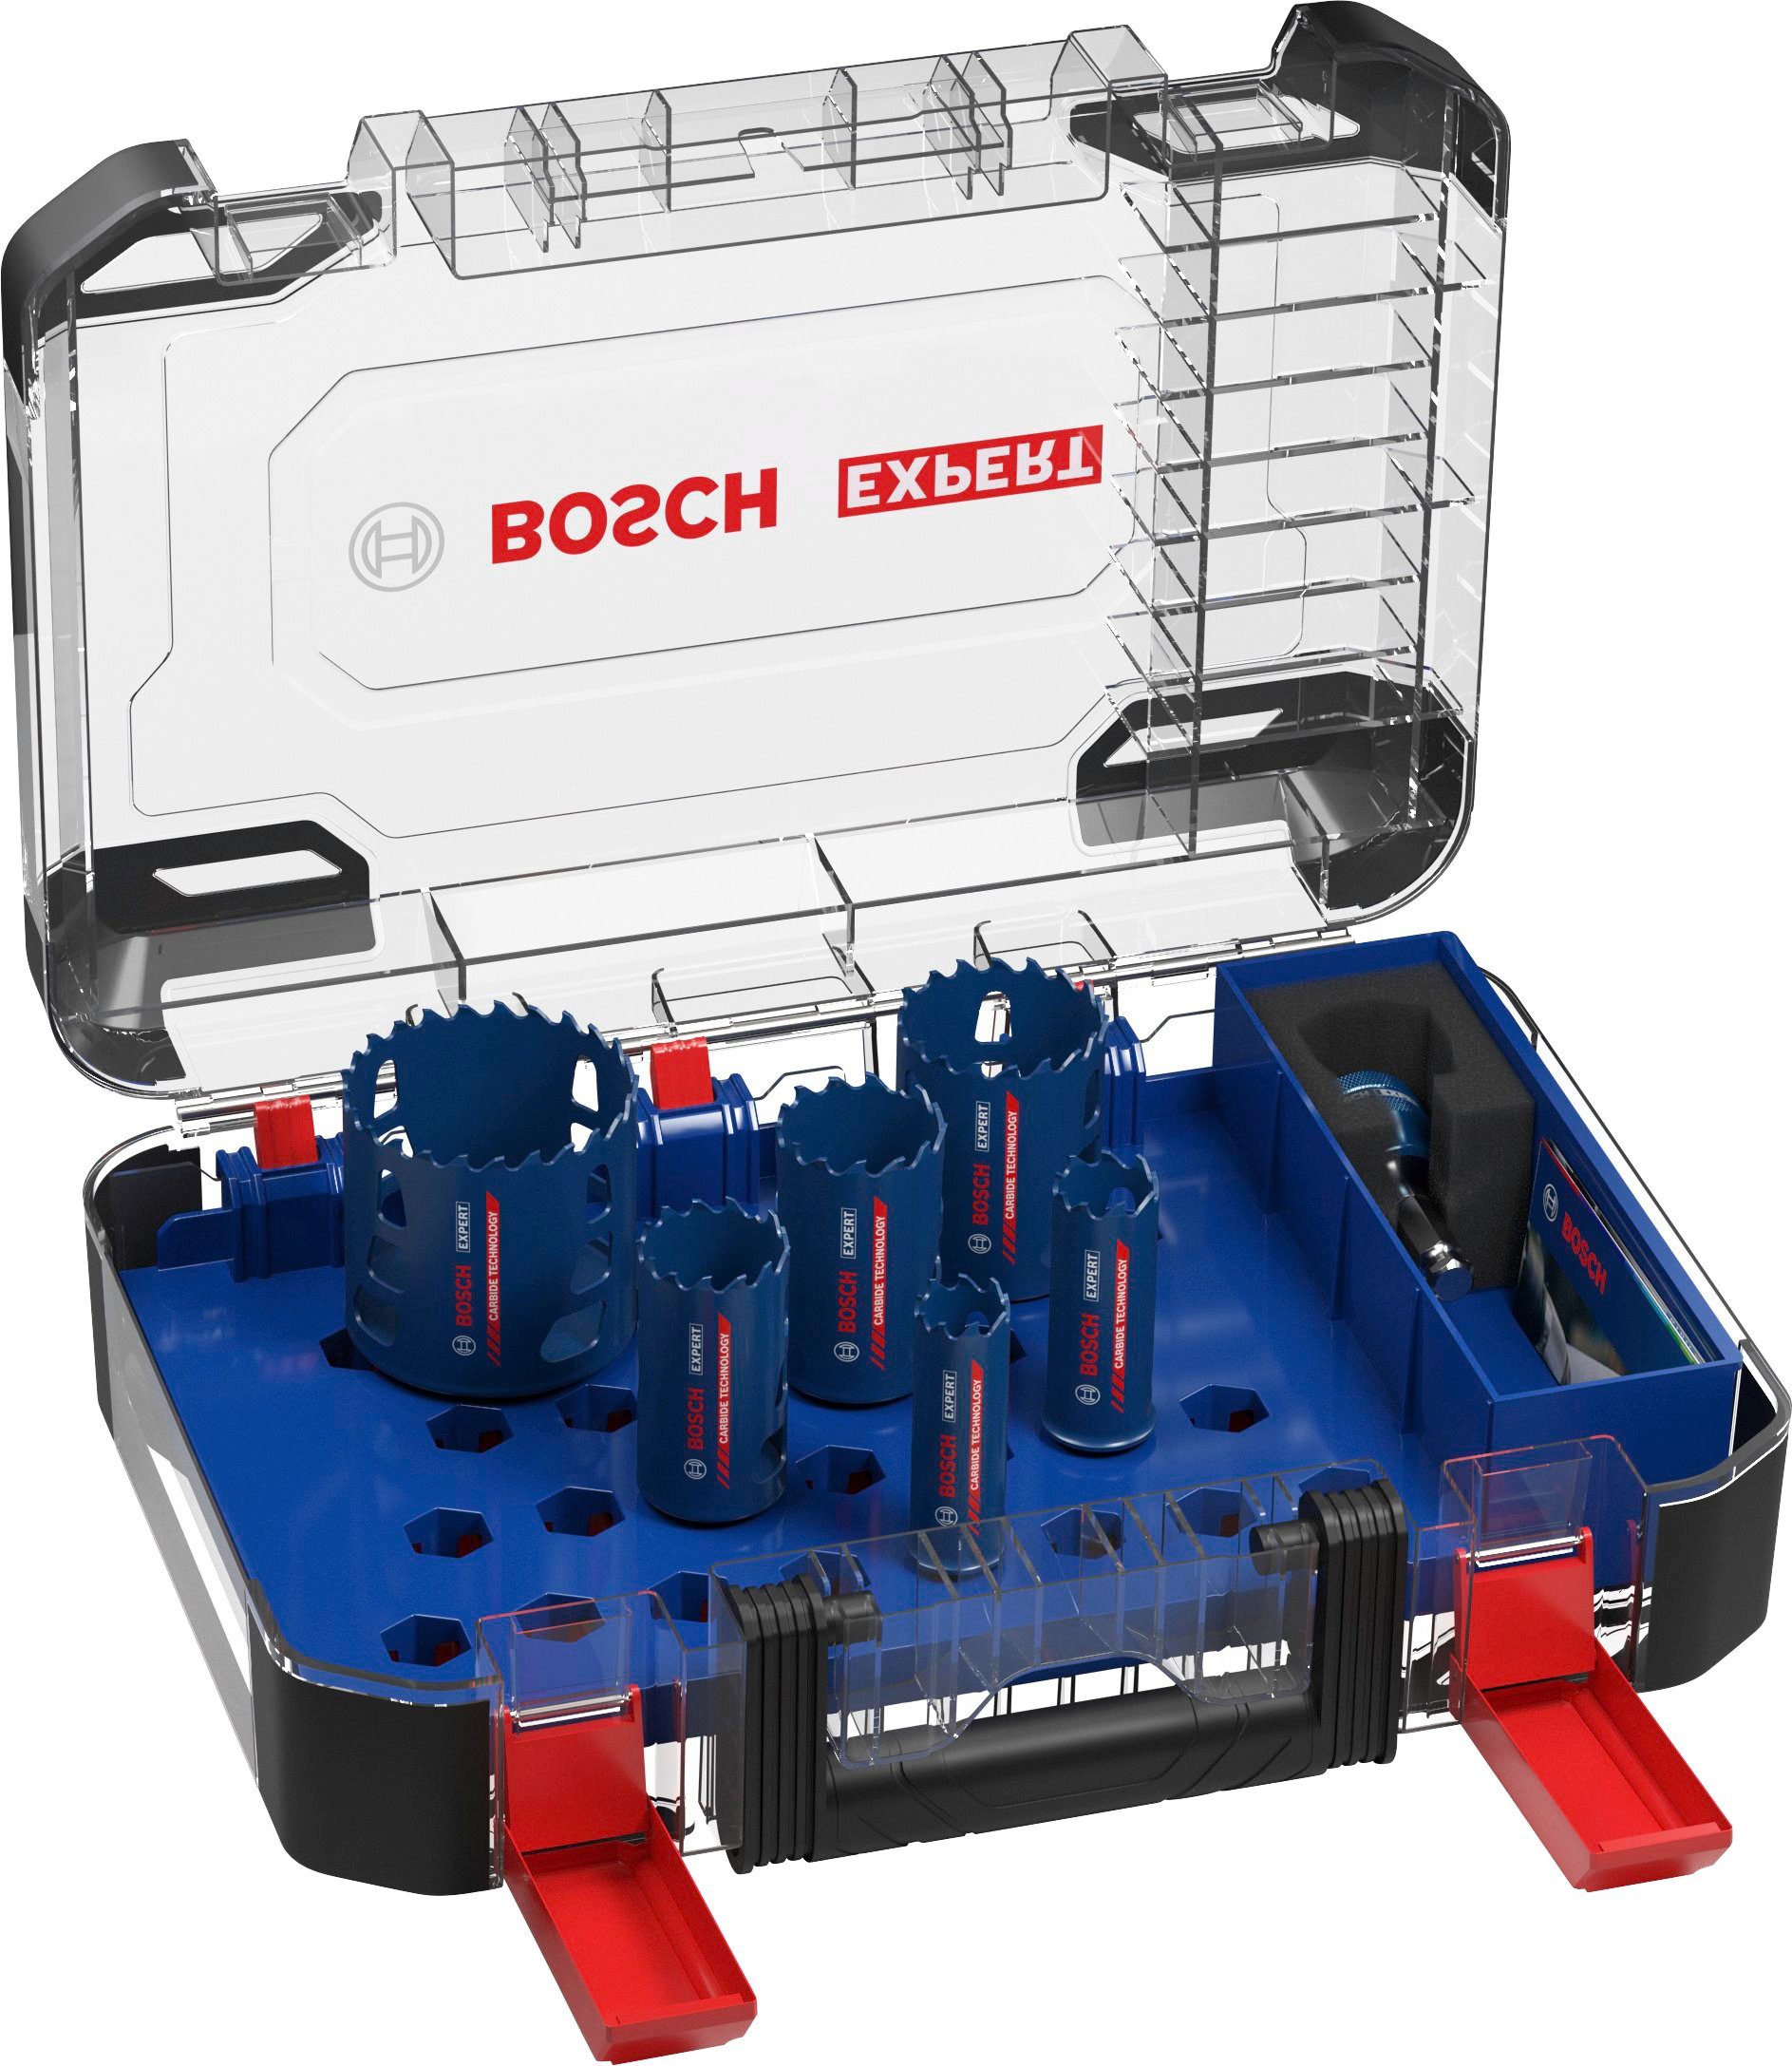 Bestseller-Online-Verkauf Bosch Professional Lochsäge Aufnahmesystem: Tough Bosch EXPERT Material, 9-tlg., 22/25/35/40/51/68 Set, mm, Standard-Bohrfutter Power-Change-Adapter